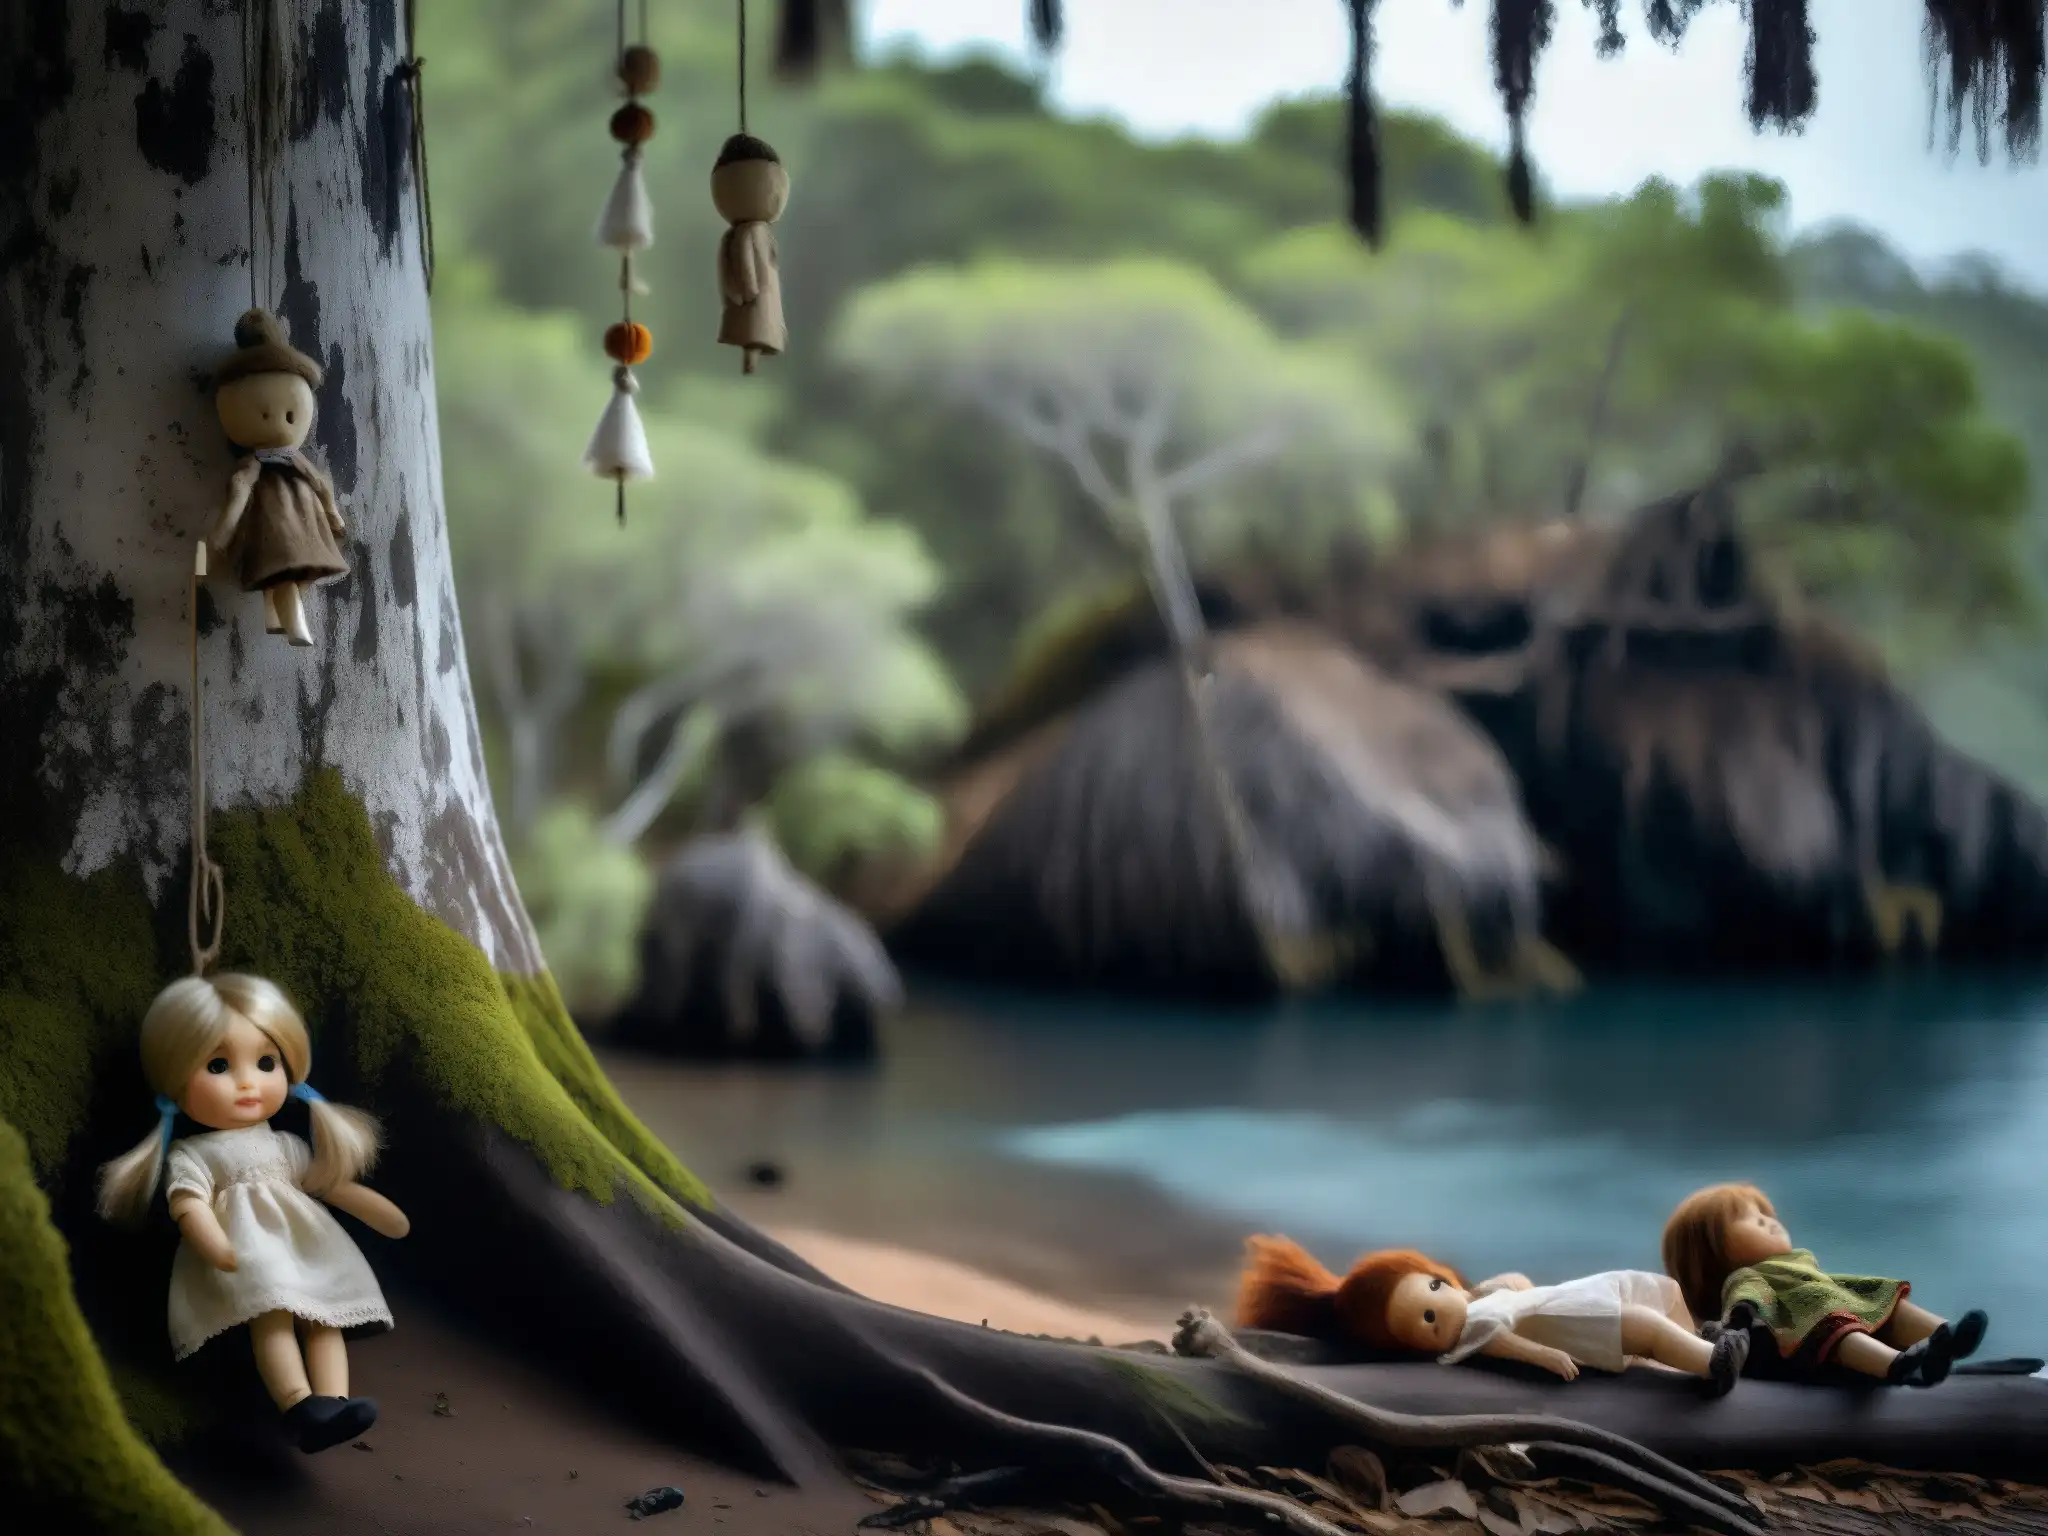 Detalle inquietante de las muñecas desgastadas en la Isla de las Muñecas, evocando la misteriosa historia del lugar